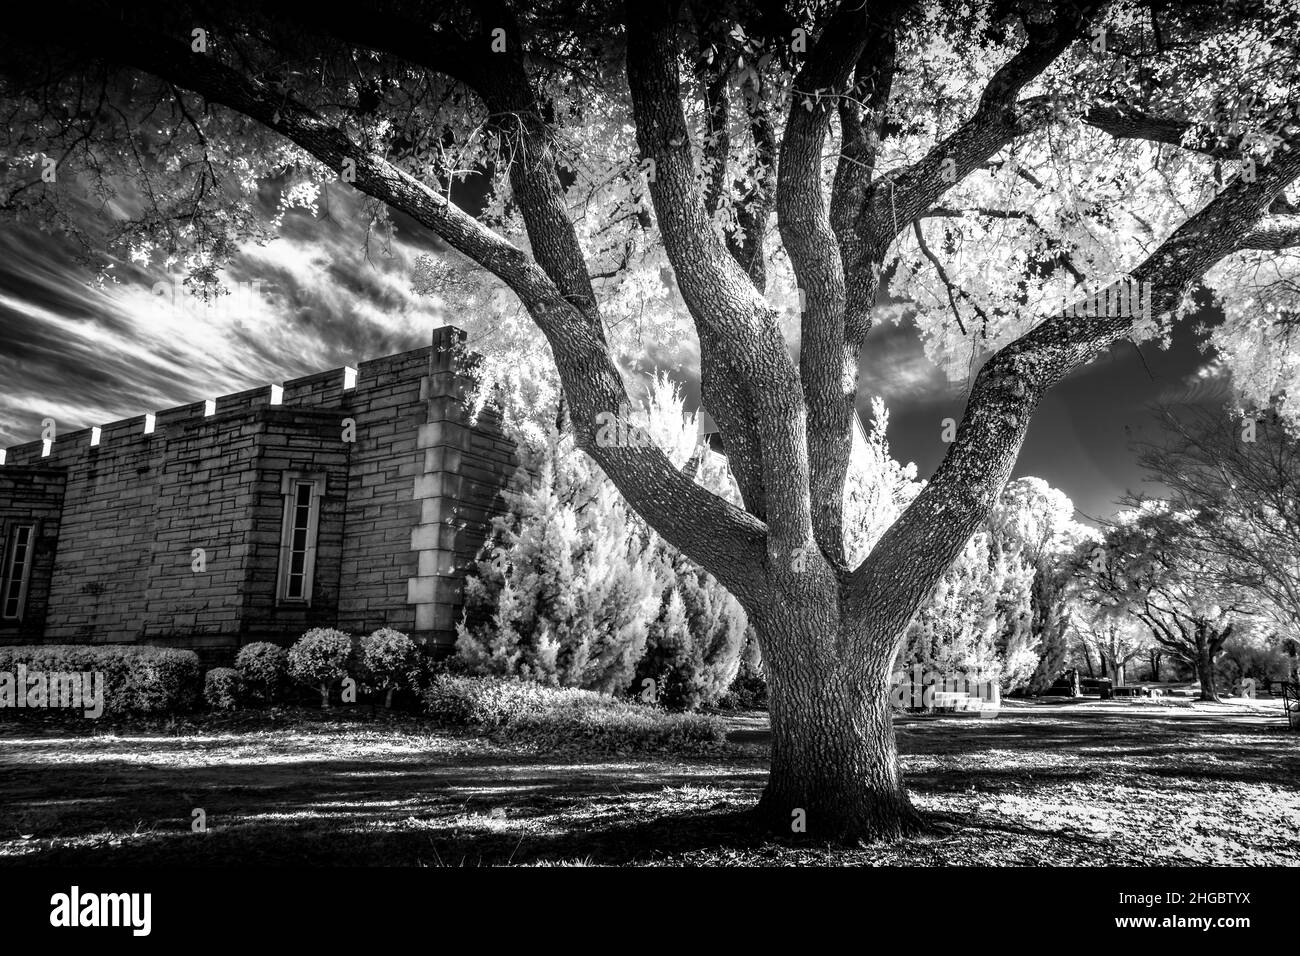 Fotografía infrarroja del paisaje del cementerio con una cripta y árboles. Uso de una cámara Nikon IR convertida. Foto de stock